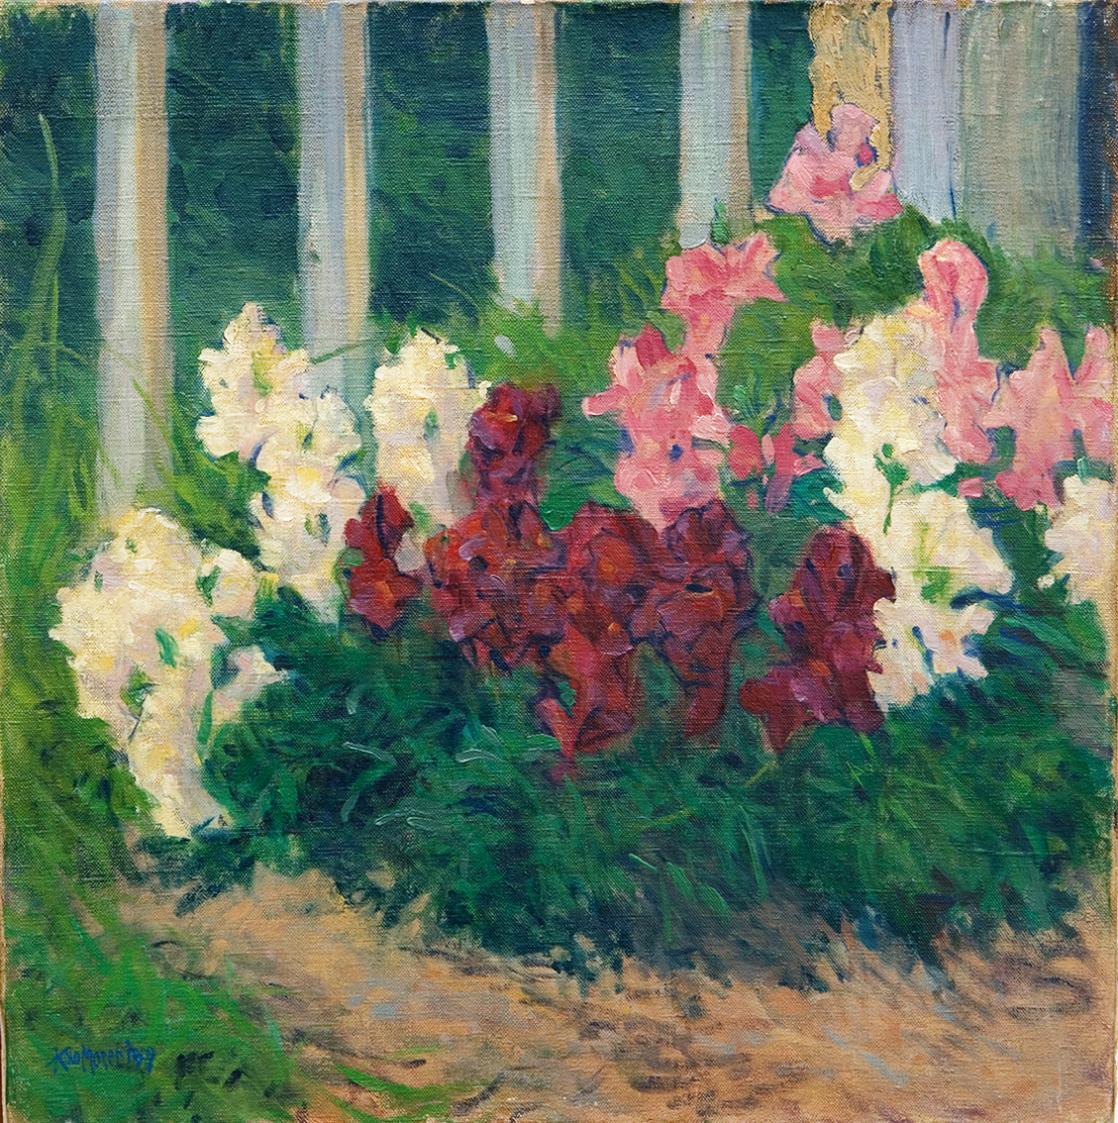 Koloman Moser, Blumen vor Gartenzaun, 1909, Öl auf Leinwand, 51 × 50 cm, Privatbesitz, Deutschl ...